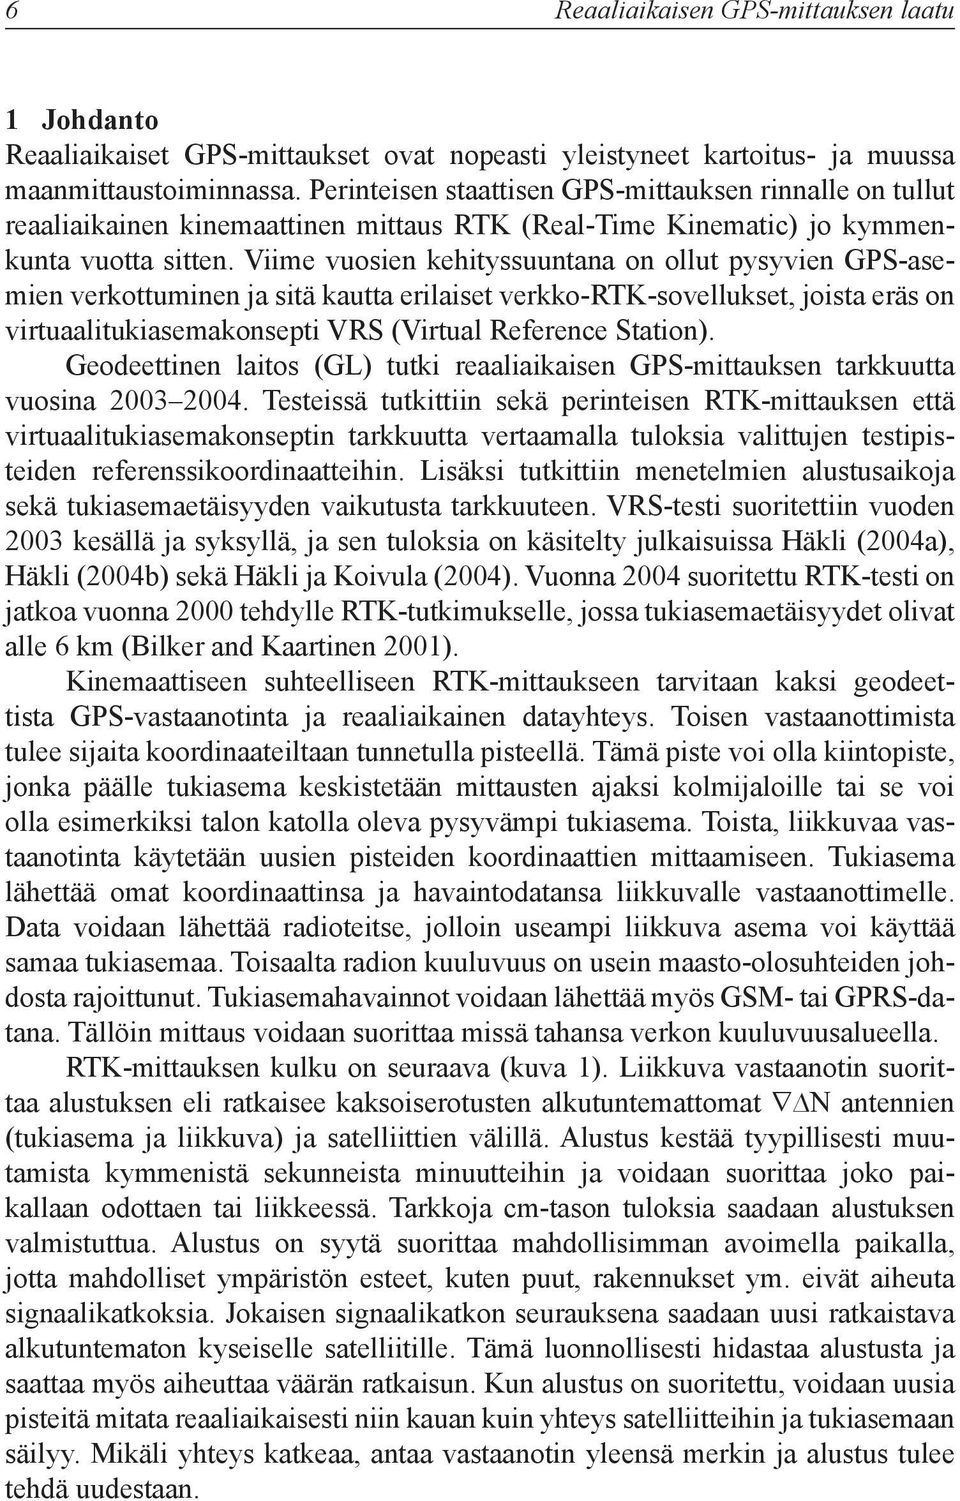 Viime vuosien kehityssuuntana on ollut pysyvien GPS-asemien verkottuminen ja sitä kautta erilaiset verkko-rtk-sovellukset, joista eräs on virtuaalitukiasemakonsepti VRS (Virtual Reference Station).